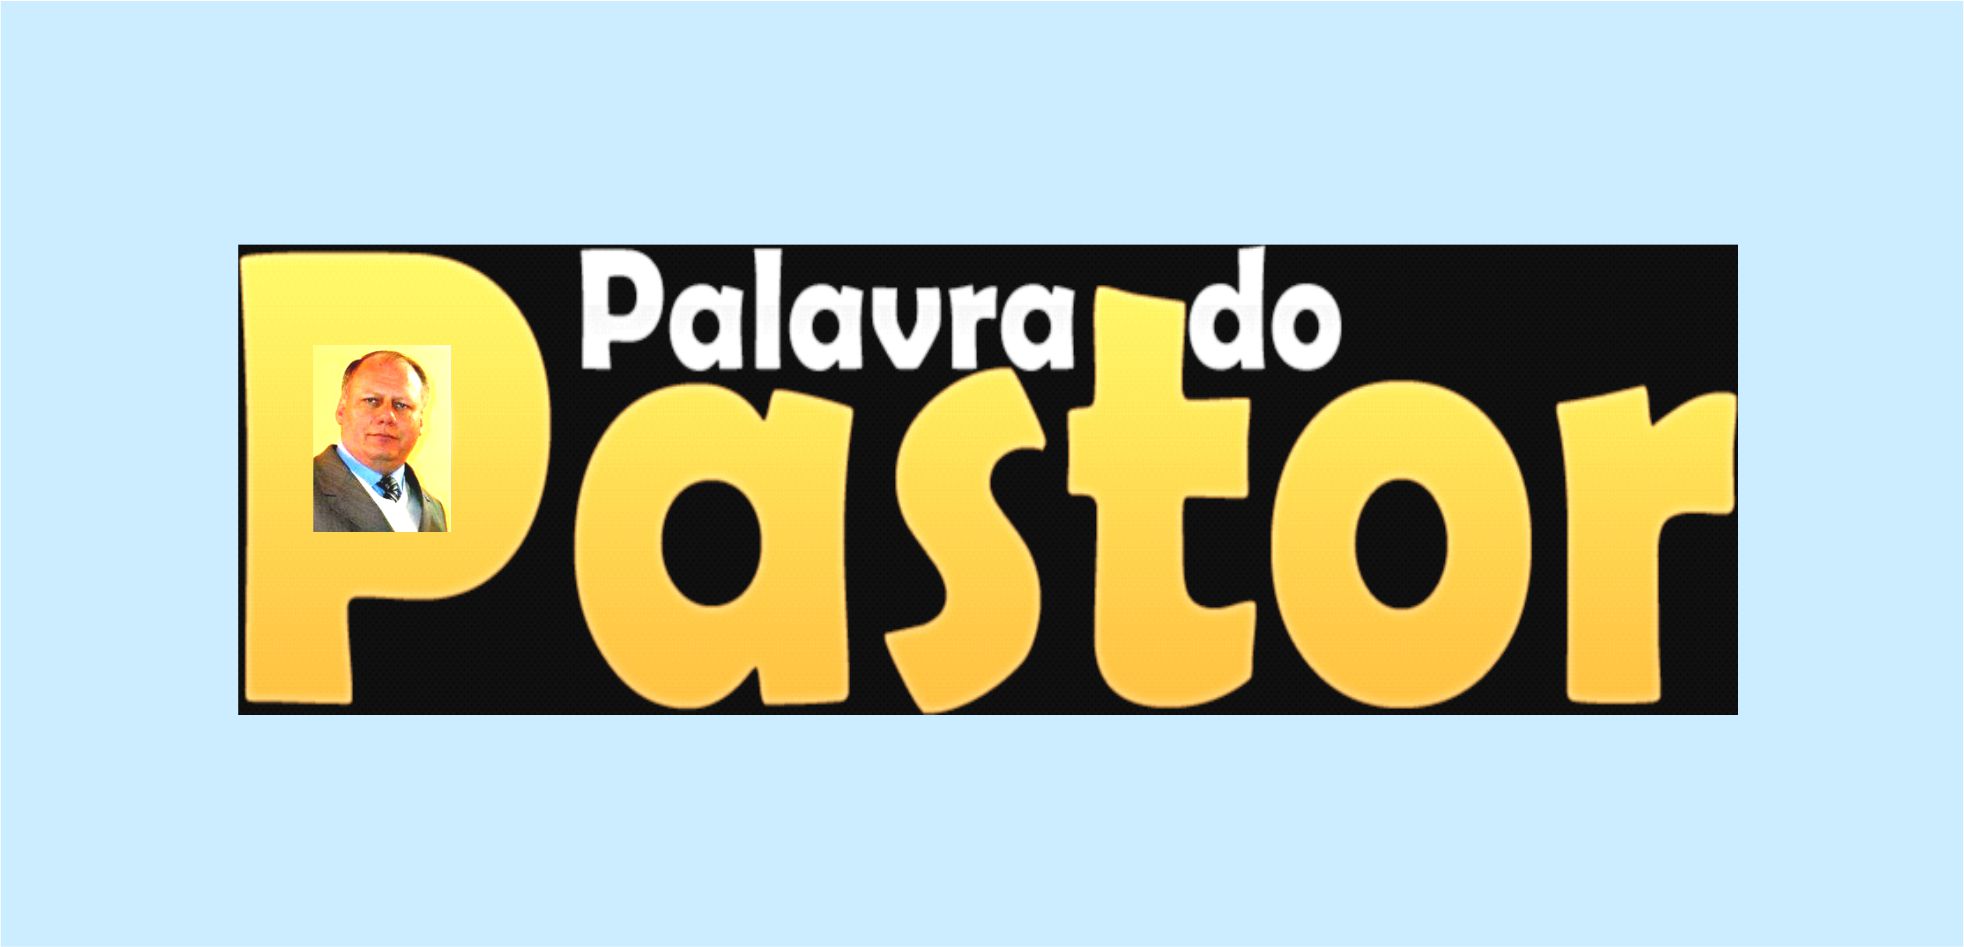 pastor  Tradução de pastor no Dicionário Infopédia de Português